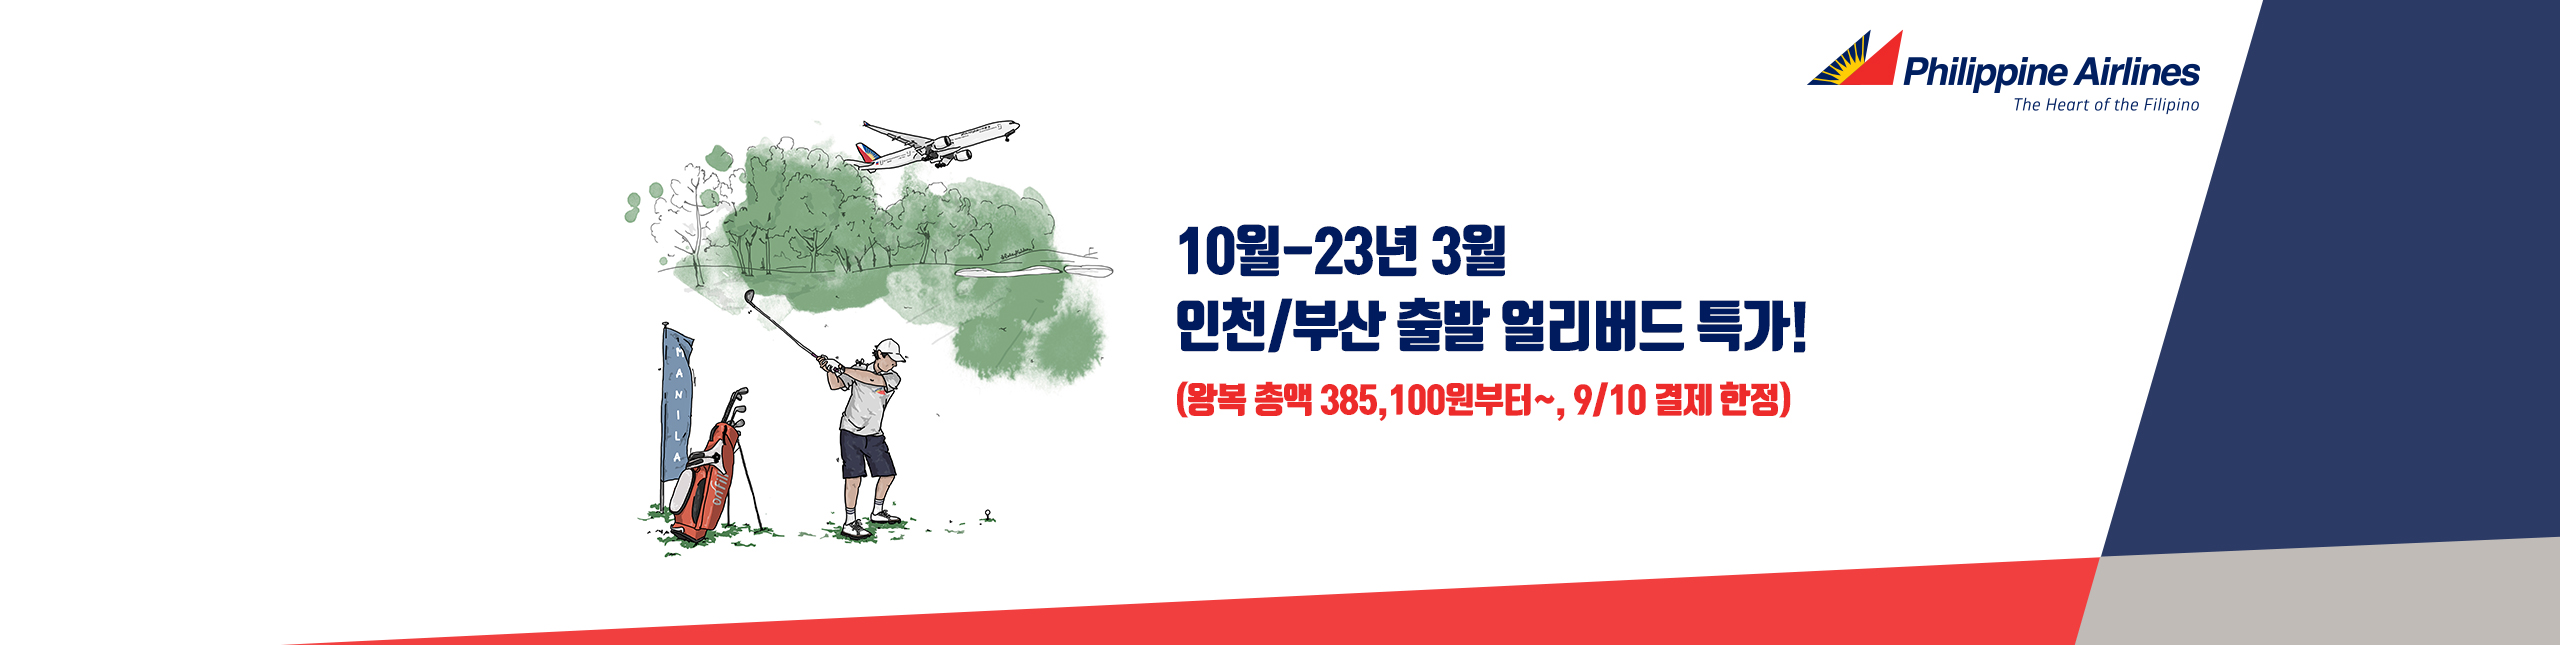 인천/부산-마닐라 얼리버드 특가 10월~23년 3월